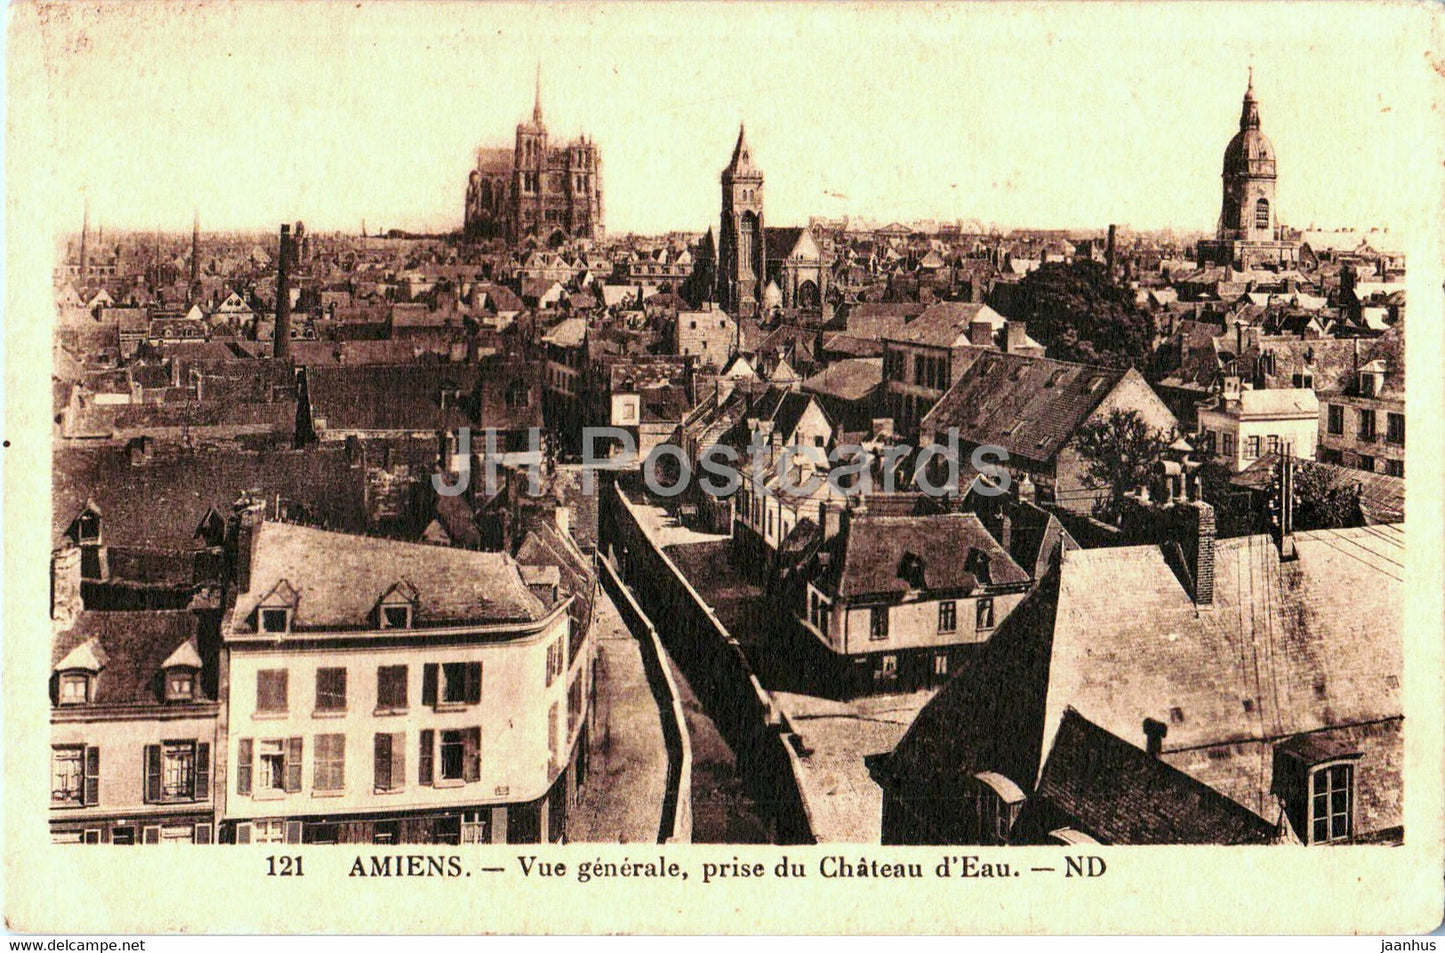 Amiens - Vue generale prise du Chateau d'Eau - 121 - old postcard - France - used - JH Postcards